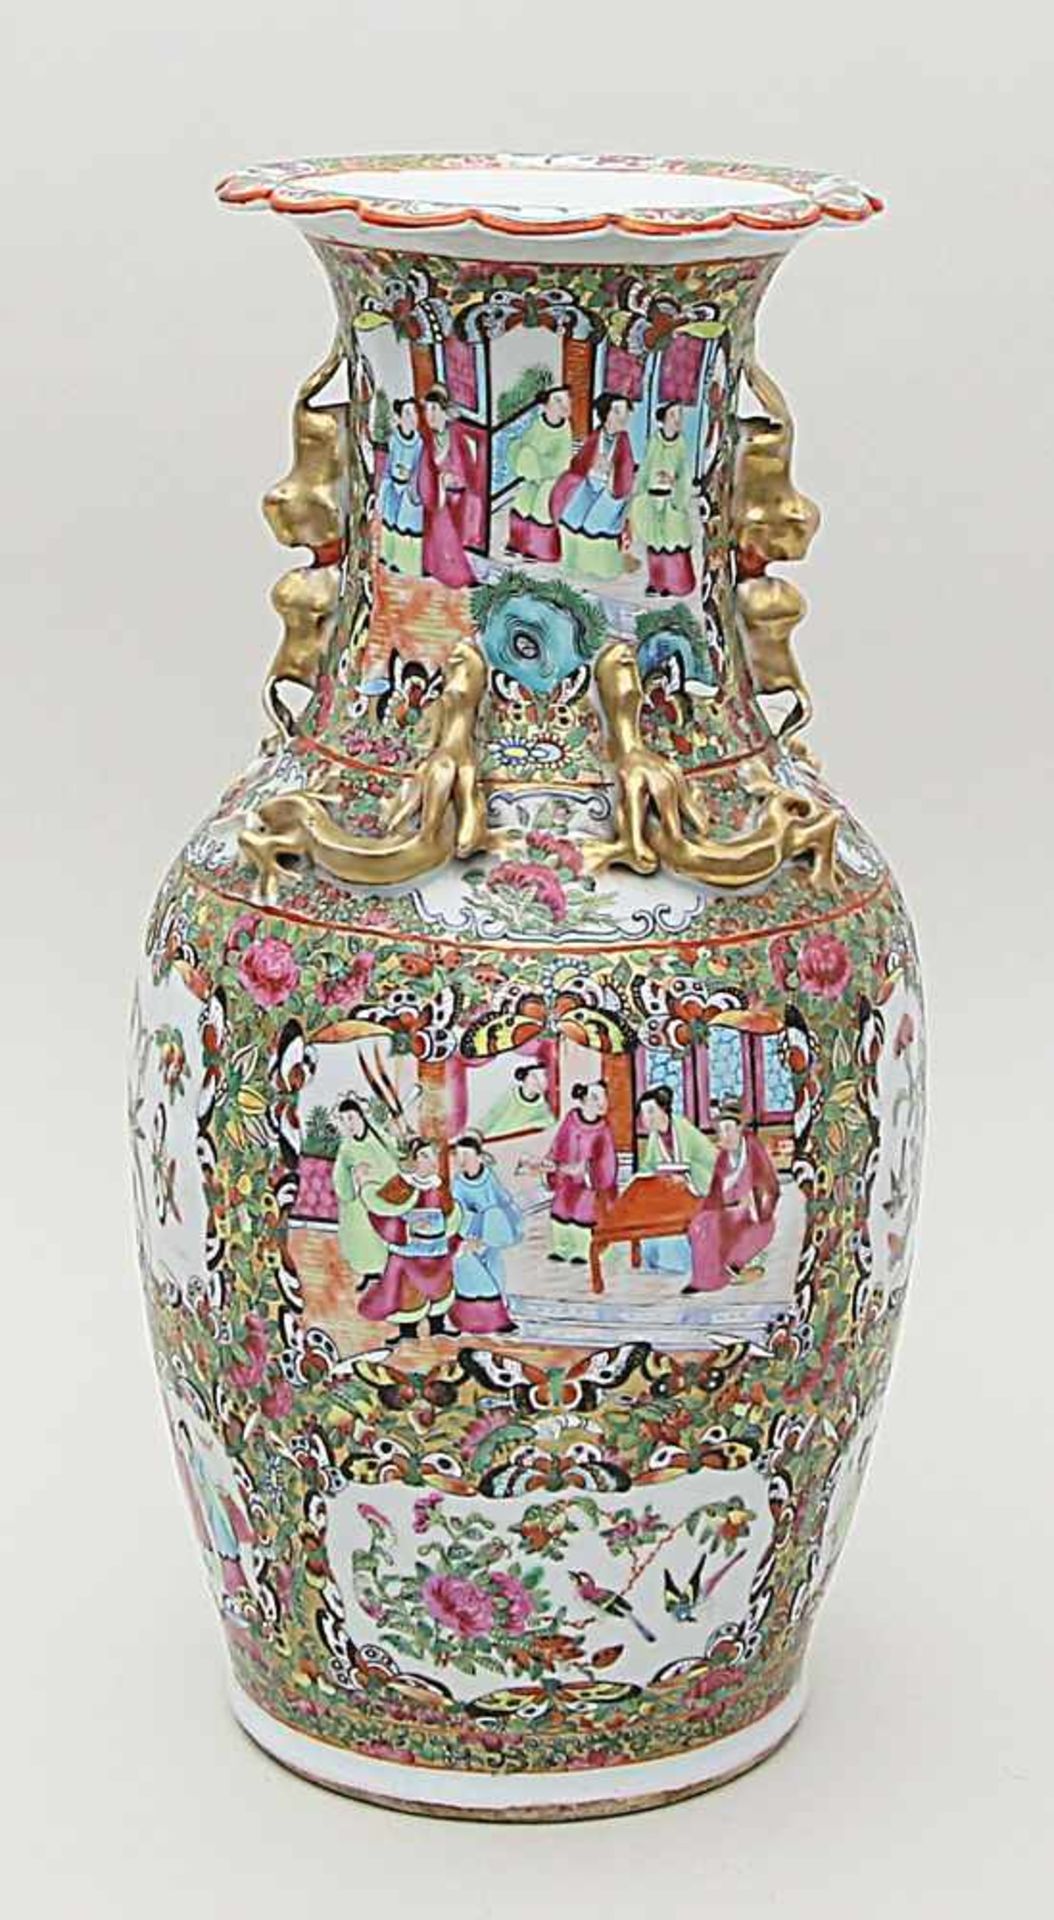 Kanton-Vase.Porzellan. Eiförmig gebauchter Korpus mit eingezogenem Hals und ausgestelltem, passig